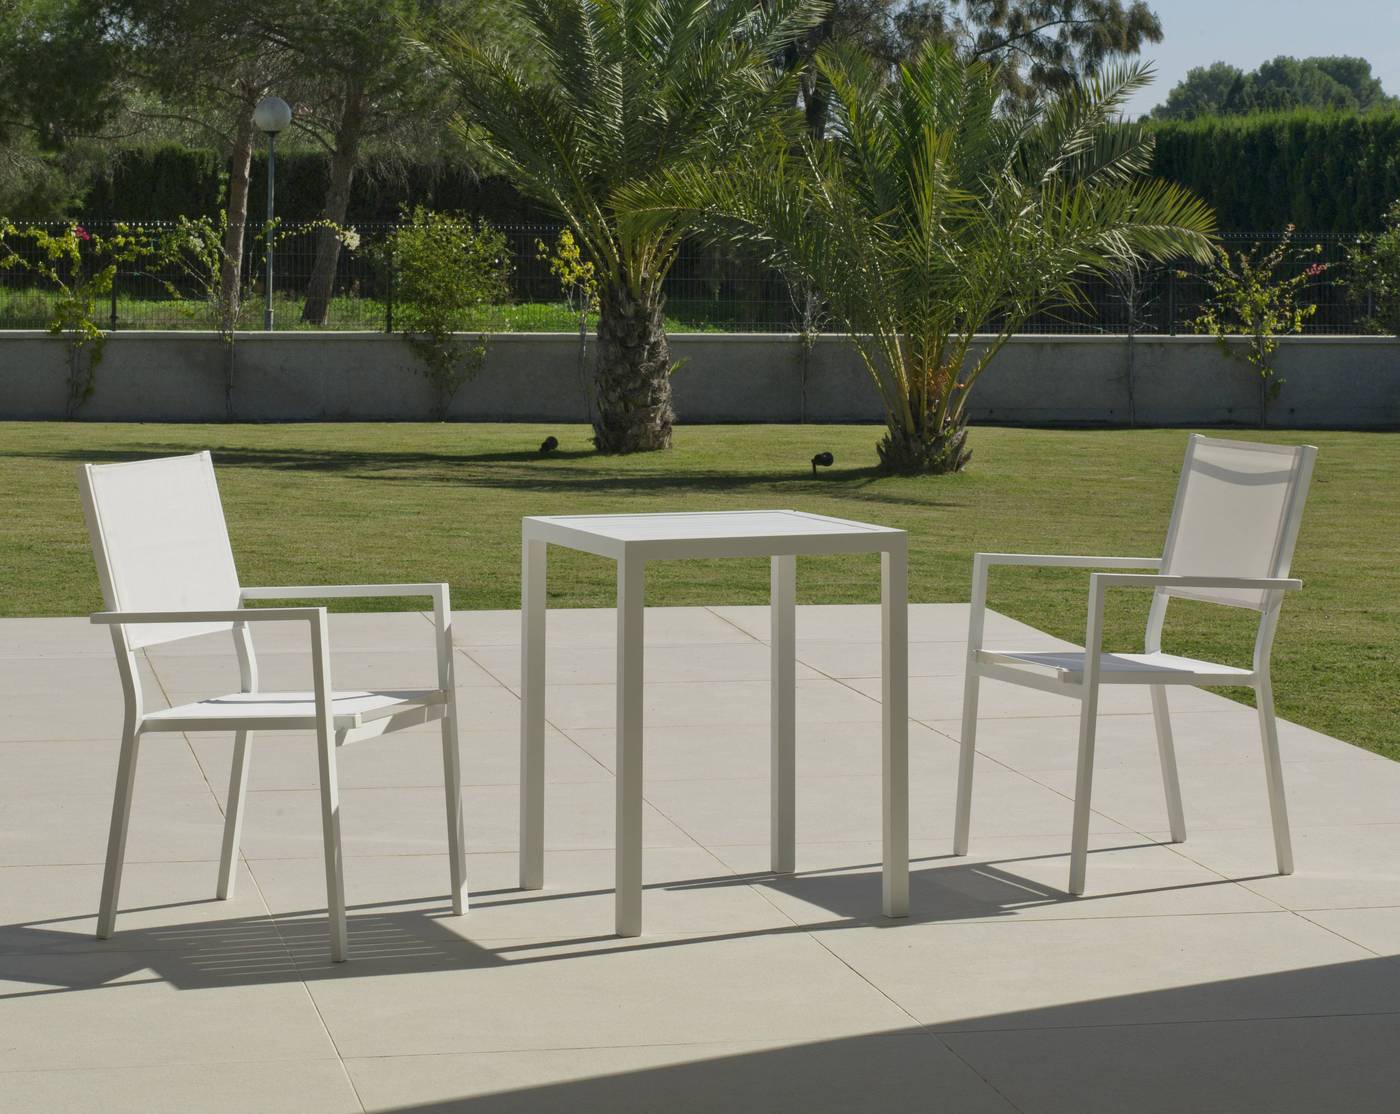 Set Aluminio Melea-Córcega 65-2 - Conjunto aluminio para jardín: Mesa cuadrada de 65 cm. + 2 sillones de aluminio y textilen. Disponible en color blanco, antracita, champagne, plata o marrón.